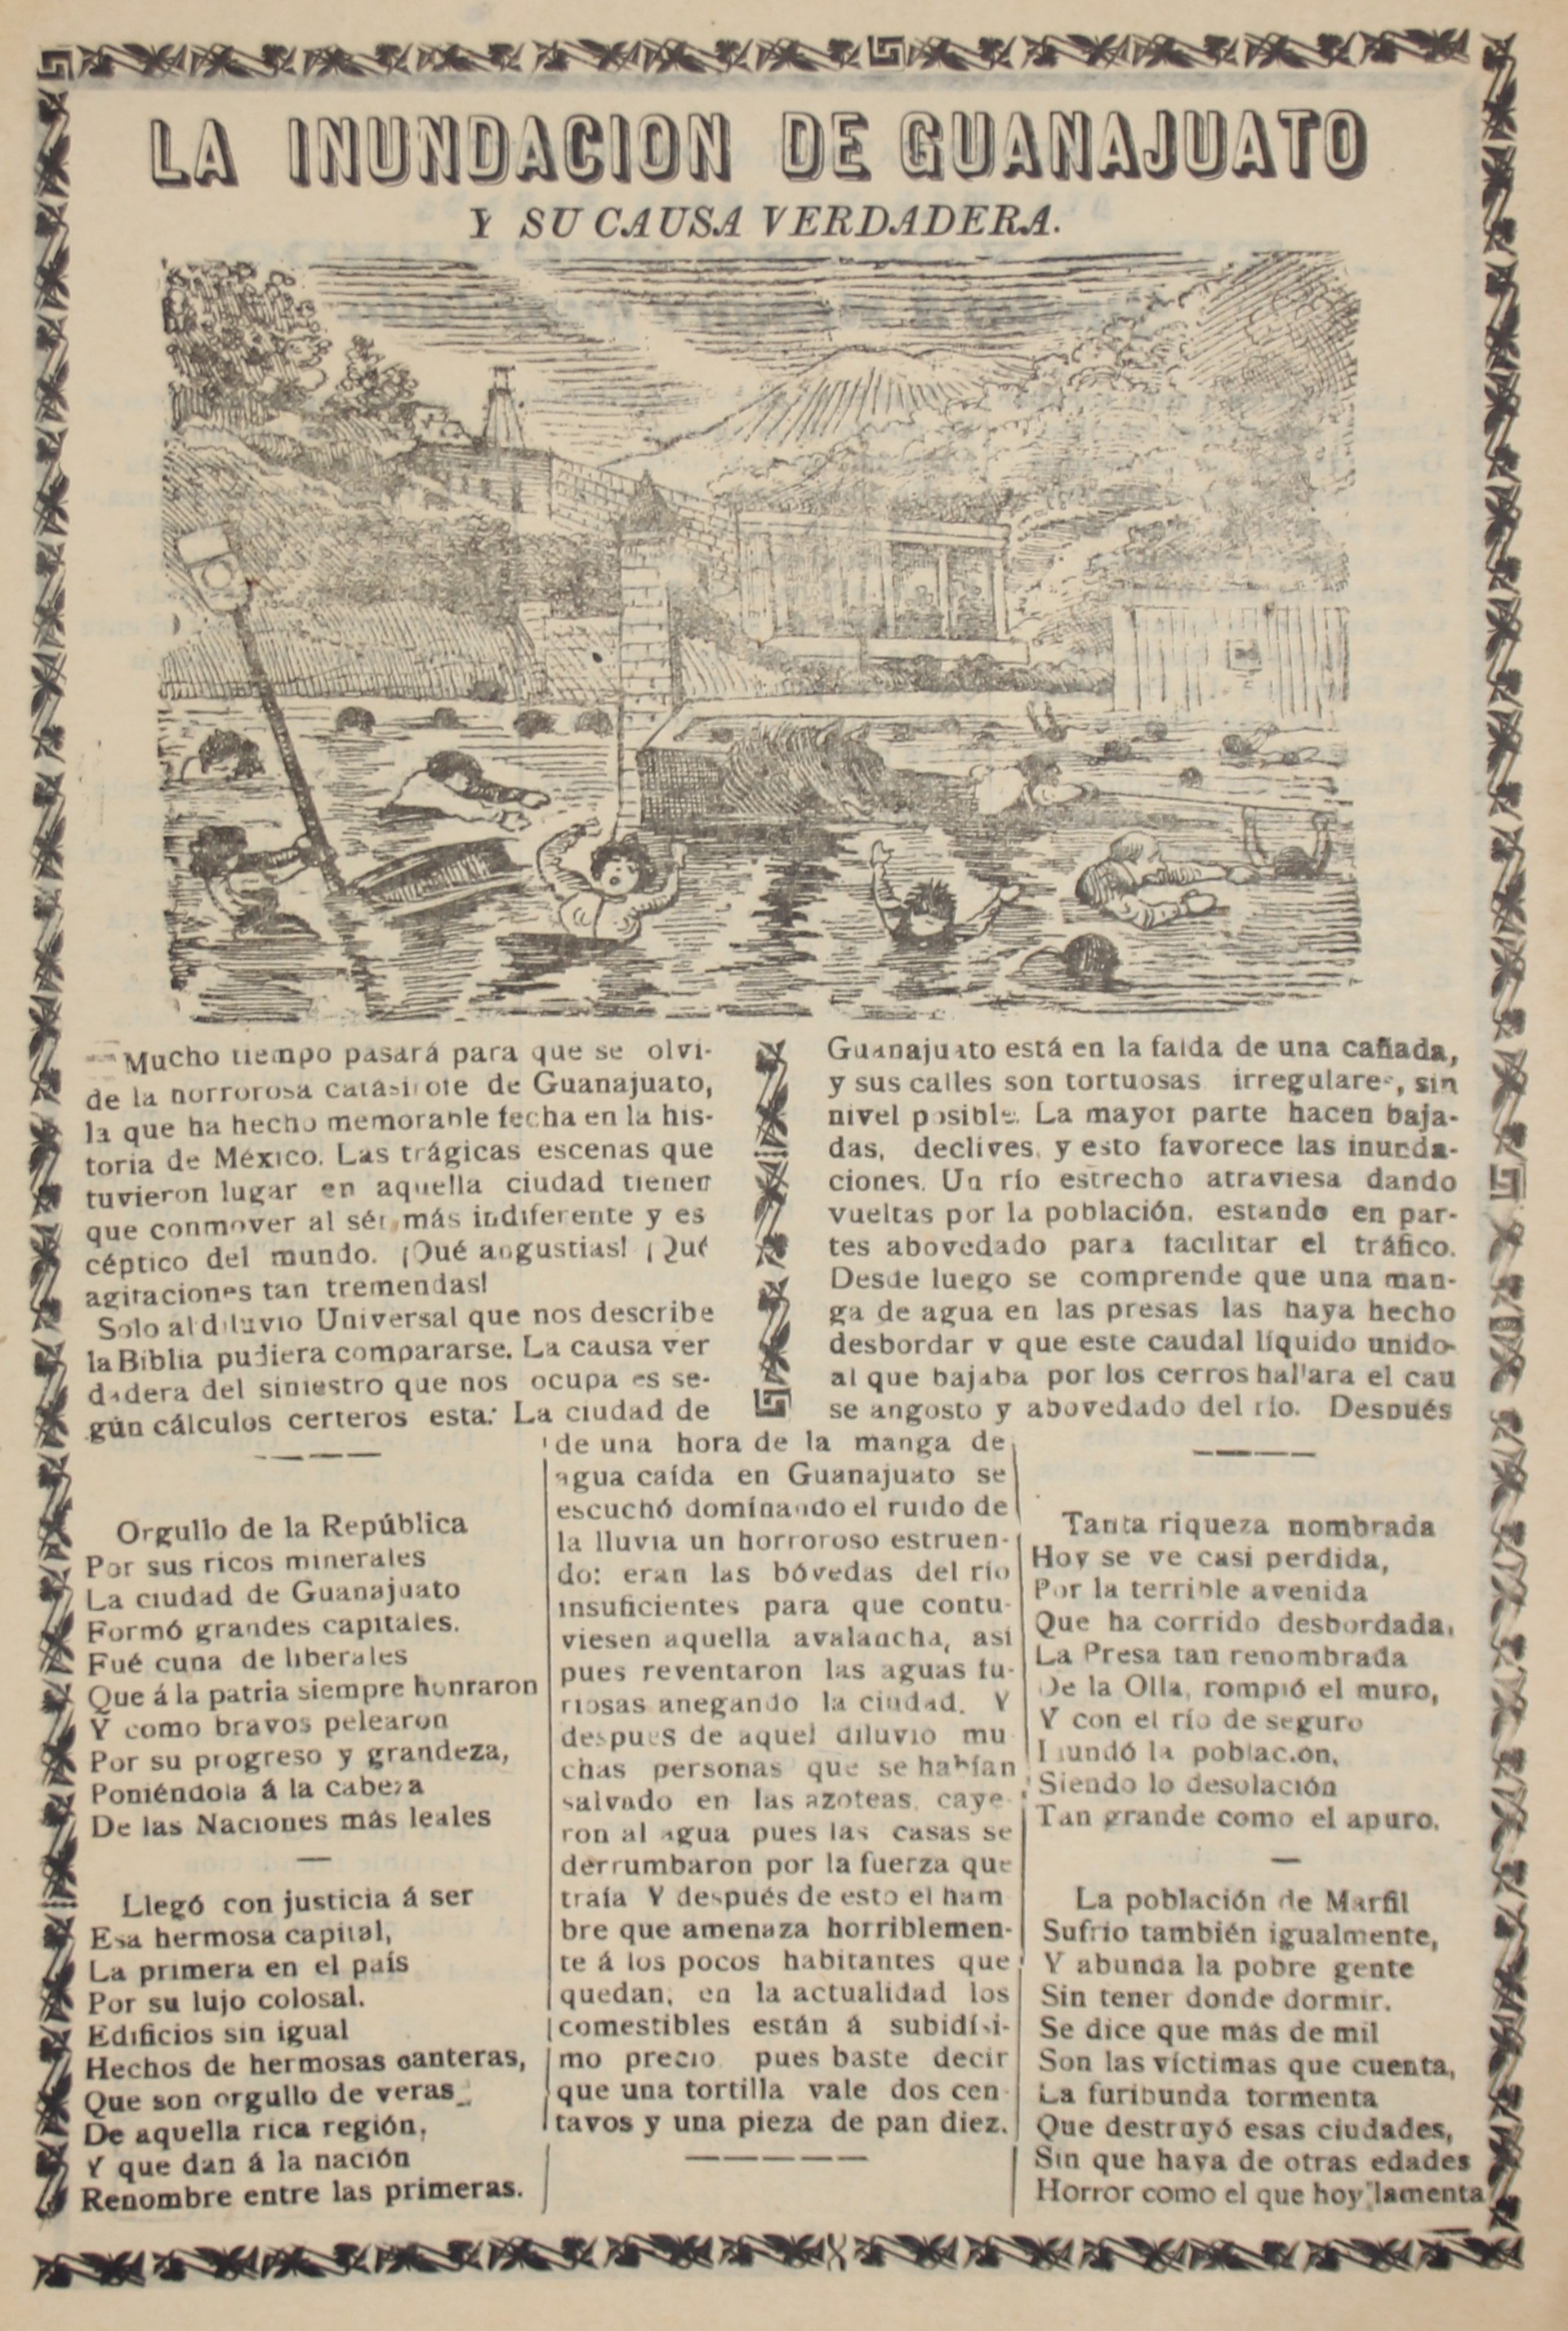 La Inundacion de Guanajuato by José Guadalupe Posada (1852 - 1913)